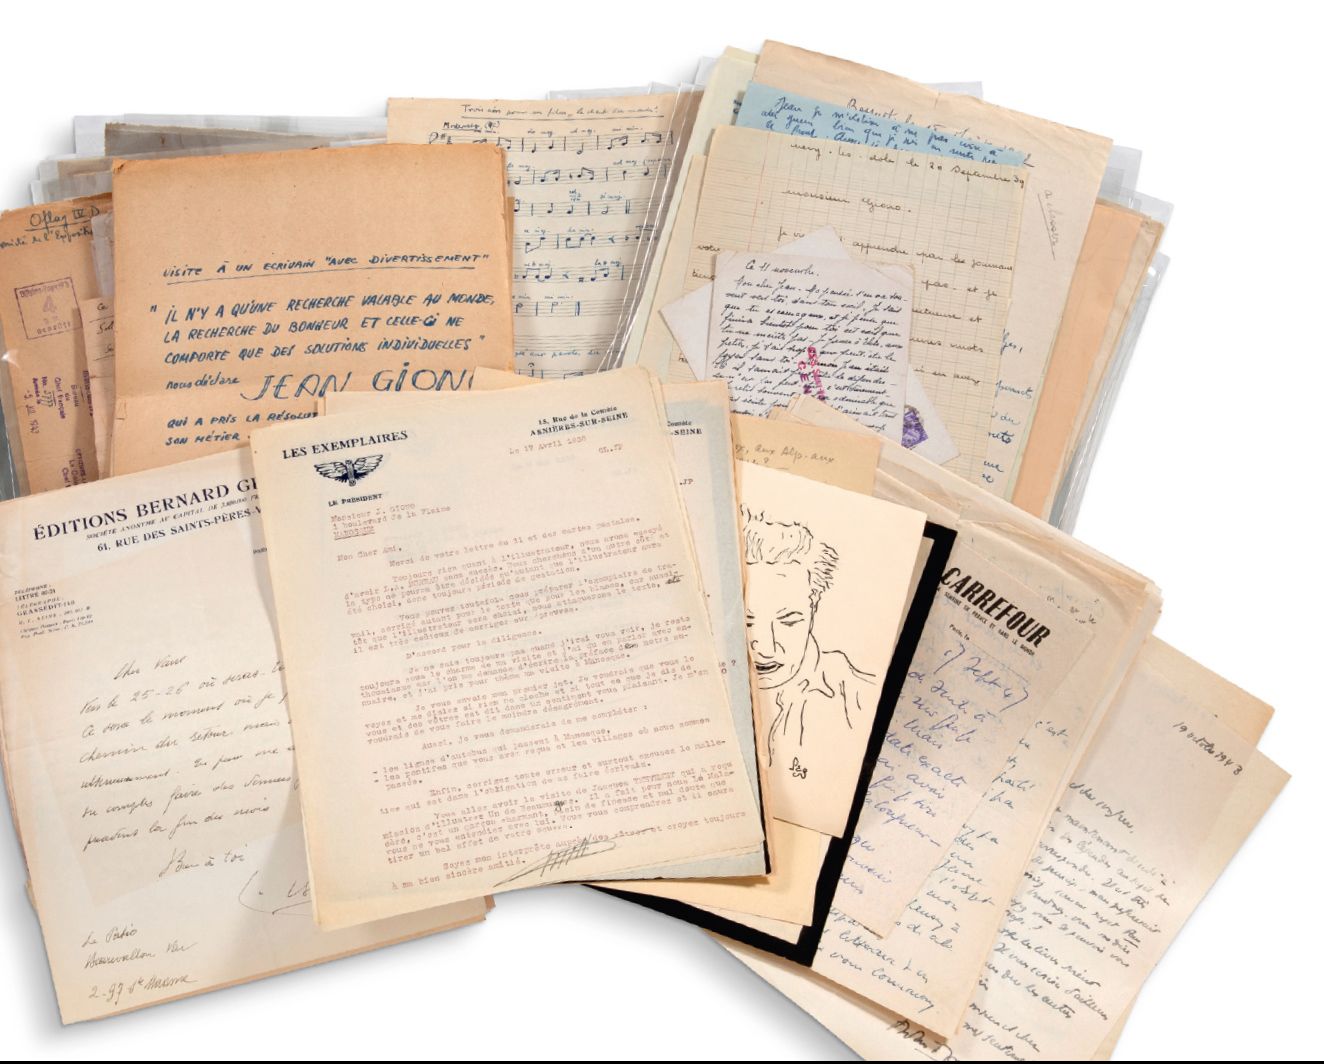 GIONO Jean (1895-1970) 致让-吉奥诺的信件。
大约3500封信件和文件[1930-1950]。
这些信件大多来自他的作品的崇拜者。他的亲密&hellip;